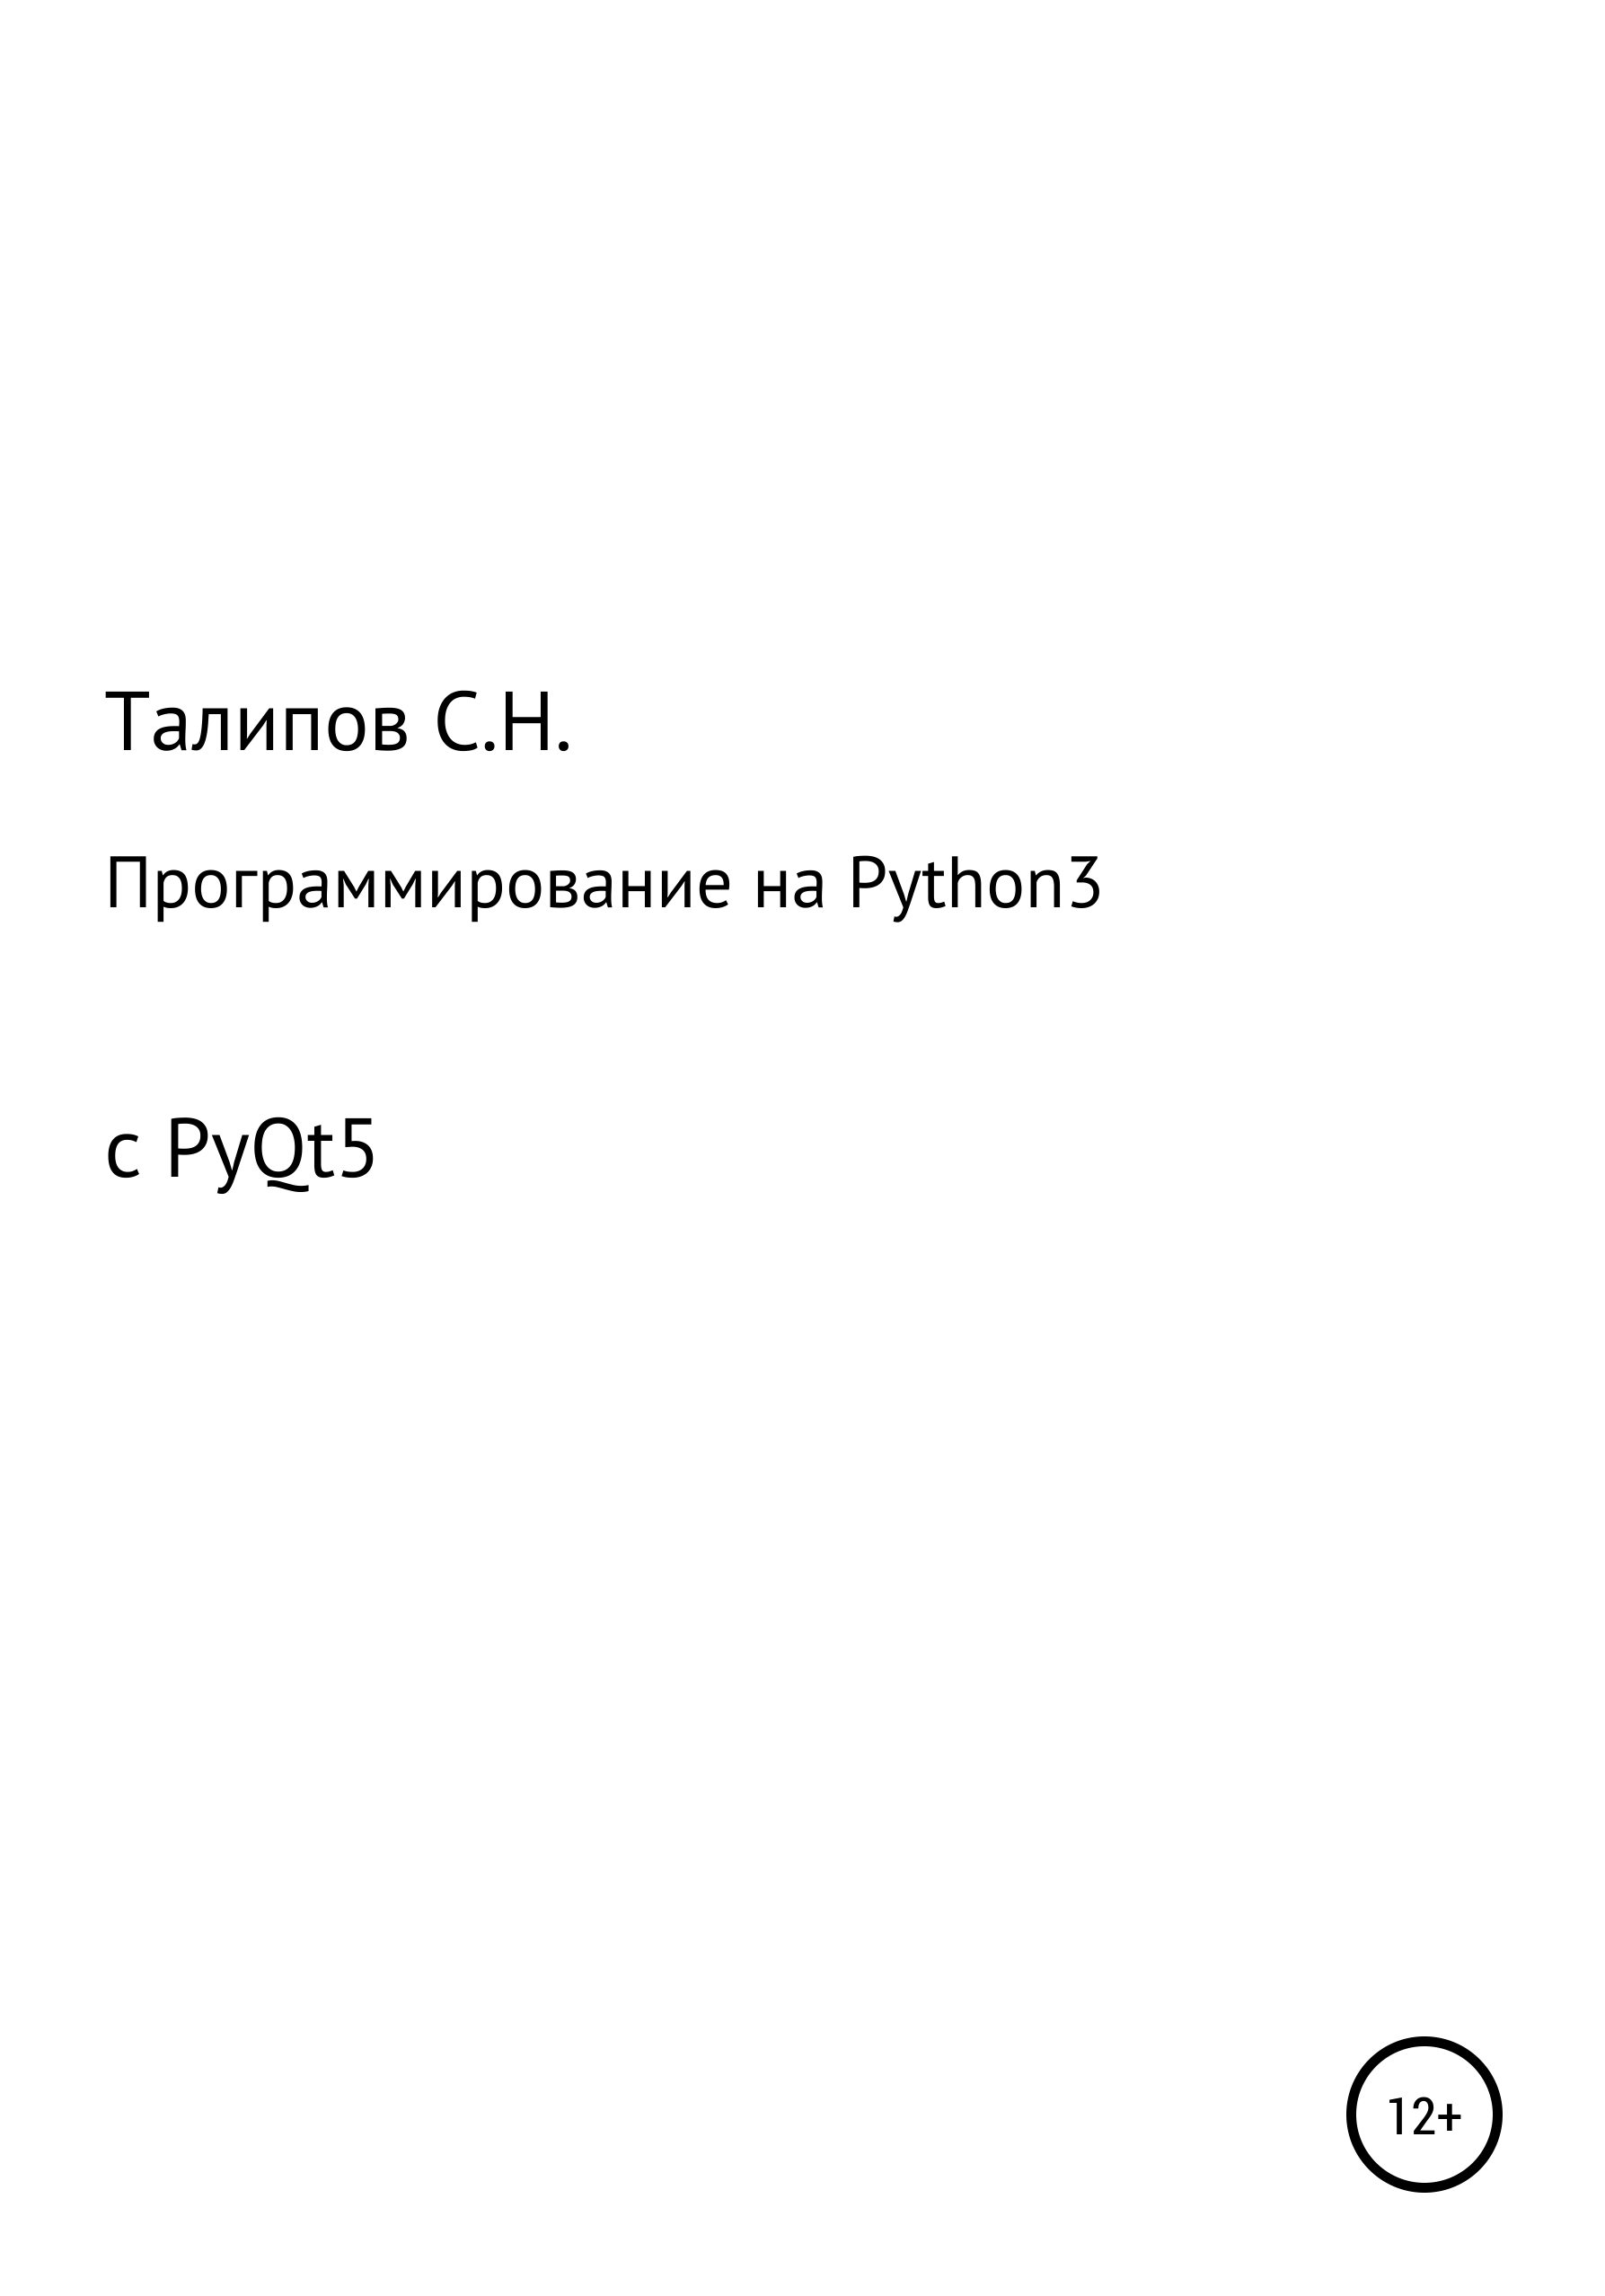 Книга  Программирование на Python3 с PyQt5 созданная Сергей Николаевич Талипов может относится к жанру программирование. Стоимость электронной книги Программирование на Python3 с PyQt5 с идентификатором 65465508 составляет 199.00 руб.